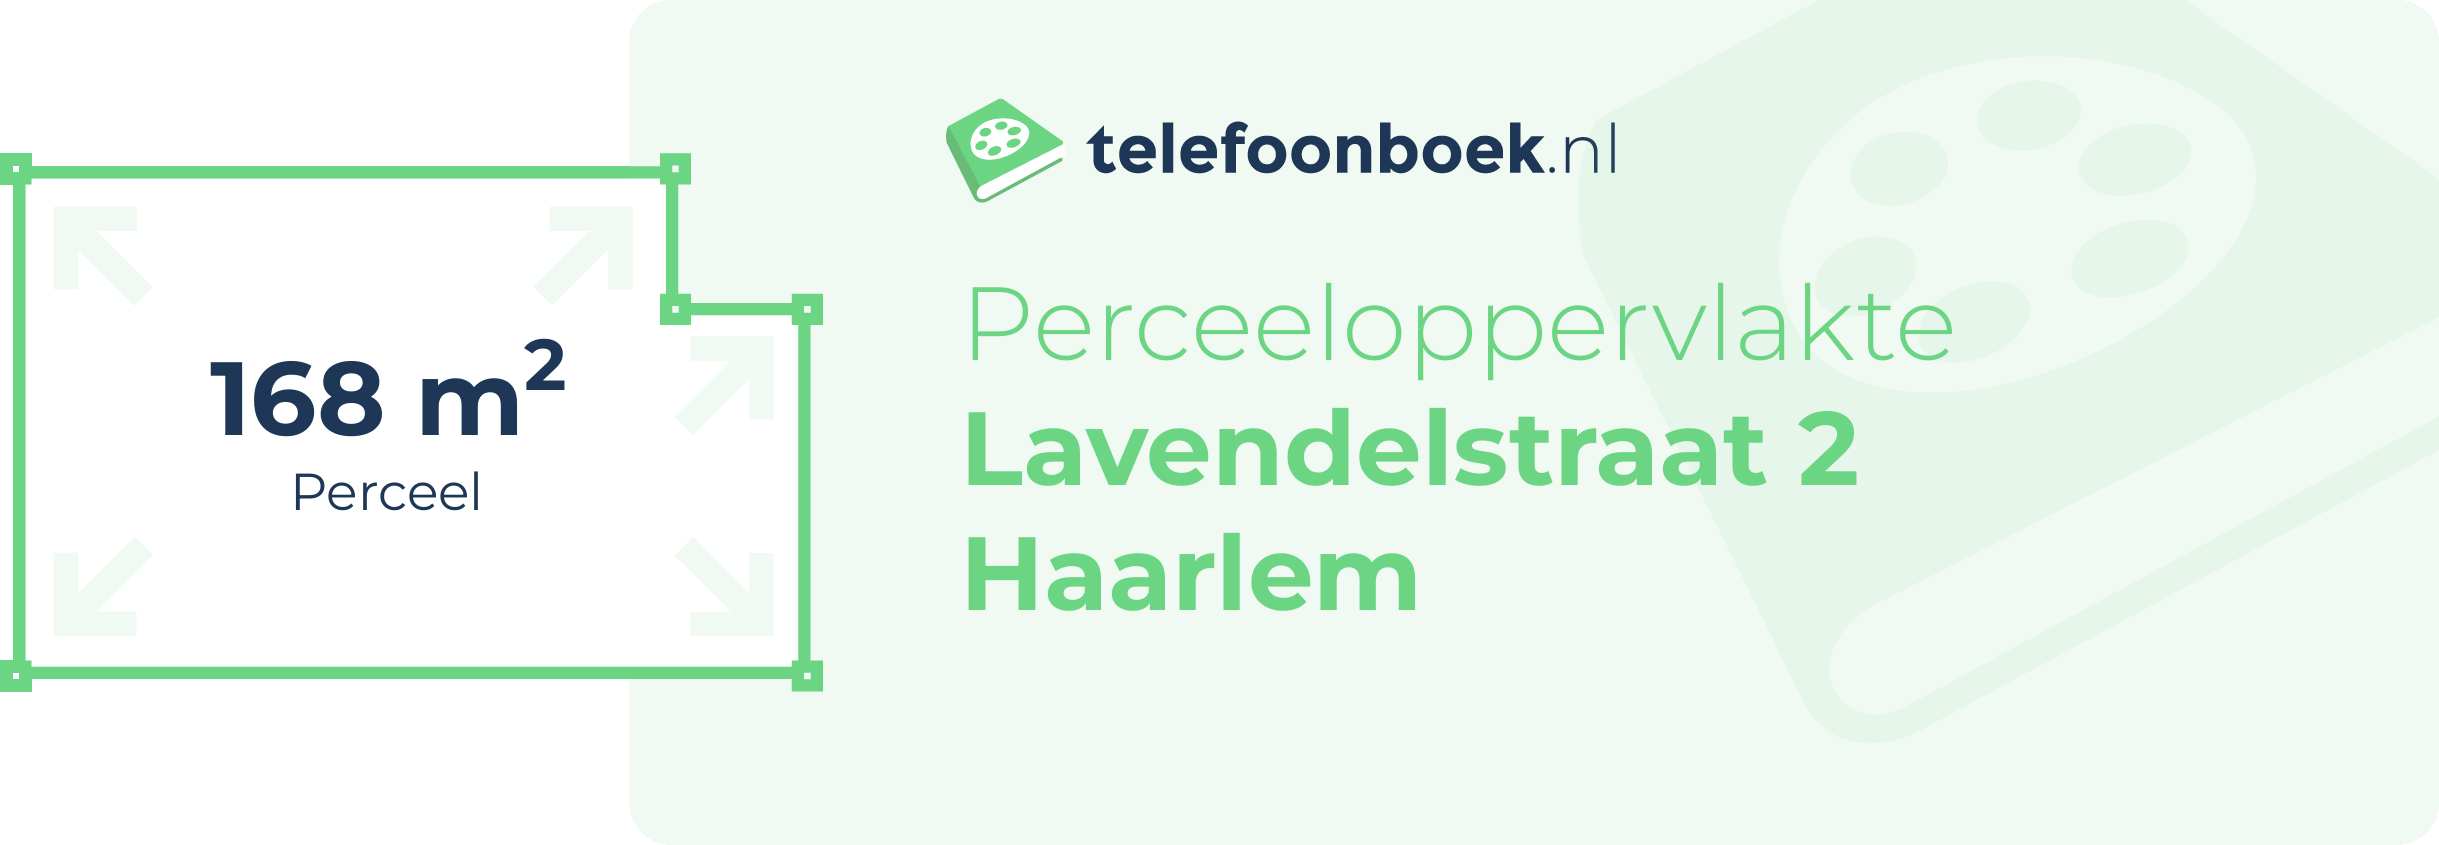 Perceeloppervlakte Lavendelstraat 2 Haarlem